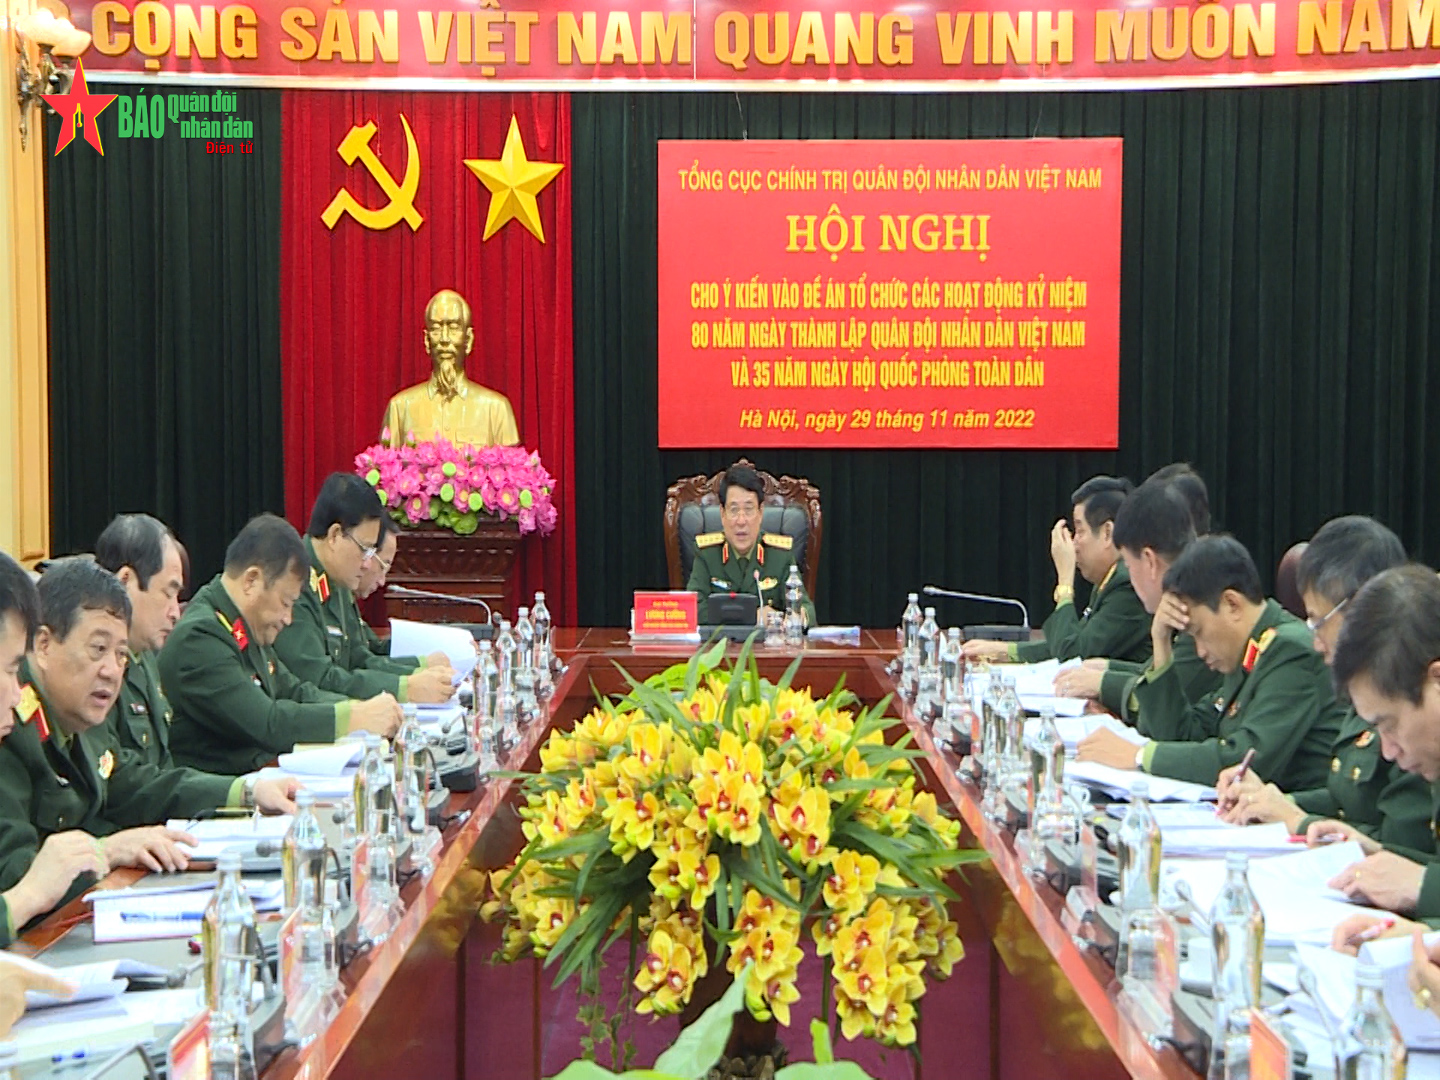 Hội nghị cho ý kiến dự thảo Đề án tổ chức kỷ niệm 80 năm Ngày thành lập QĐND Việt Nam